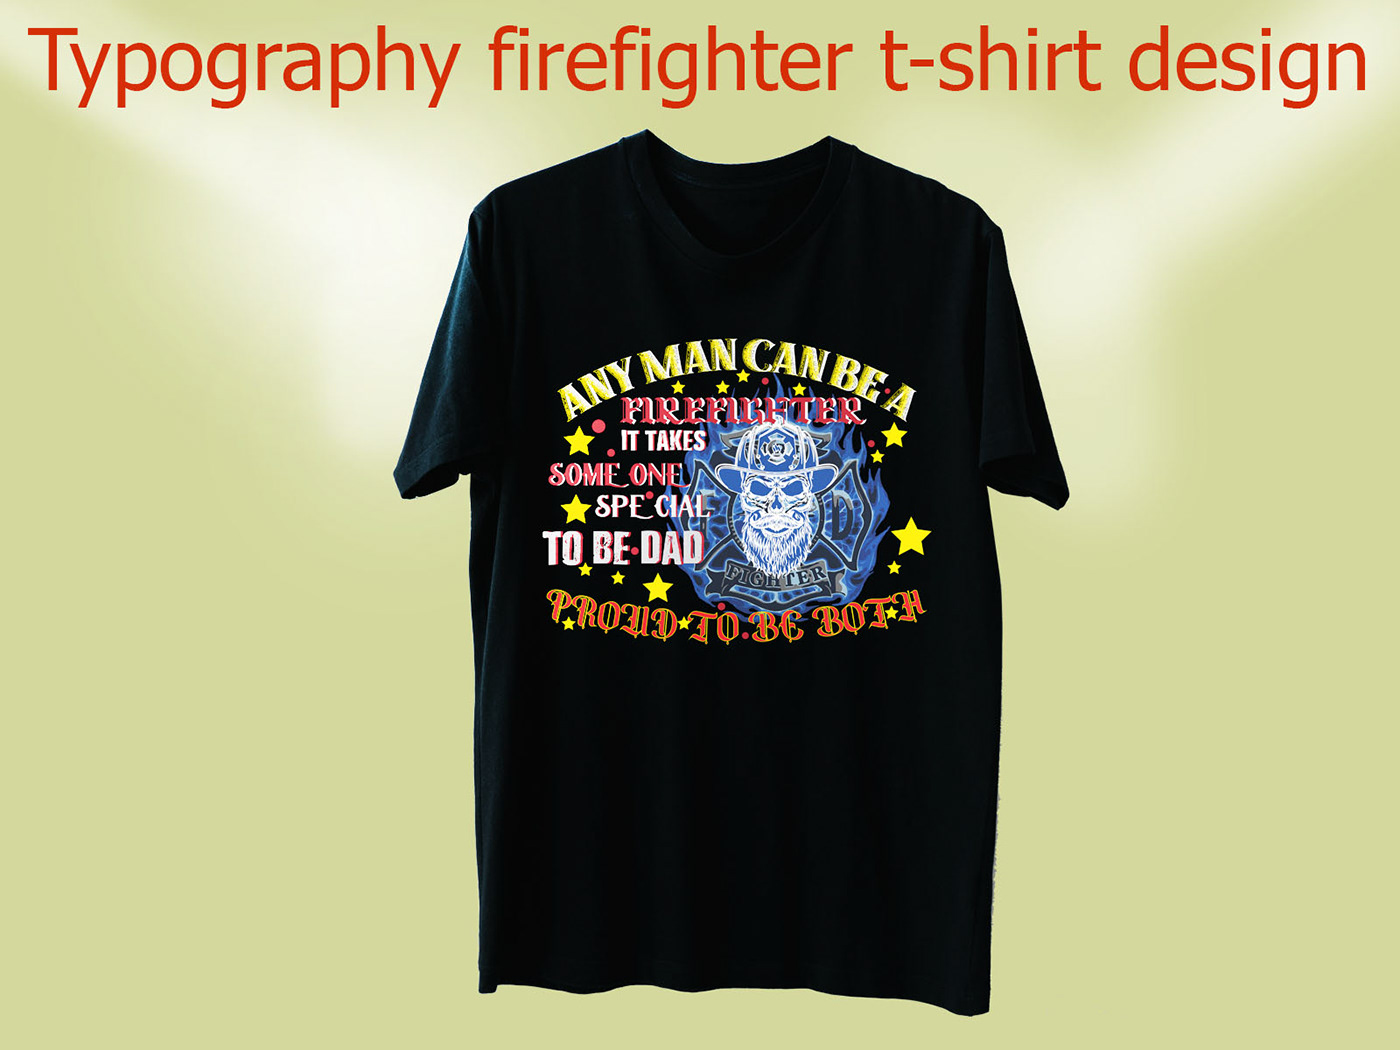 best tshirt design firefighter tshirt design Graphic Tshirt new firefighter t-shirt trendy tshirt design tshirt Tshirt Design Tshirt design ideas tshirt design inspiration Typography t-shirt design